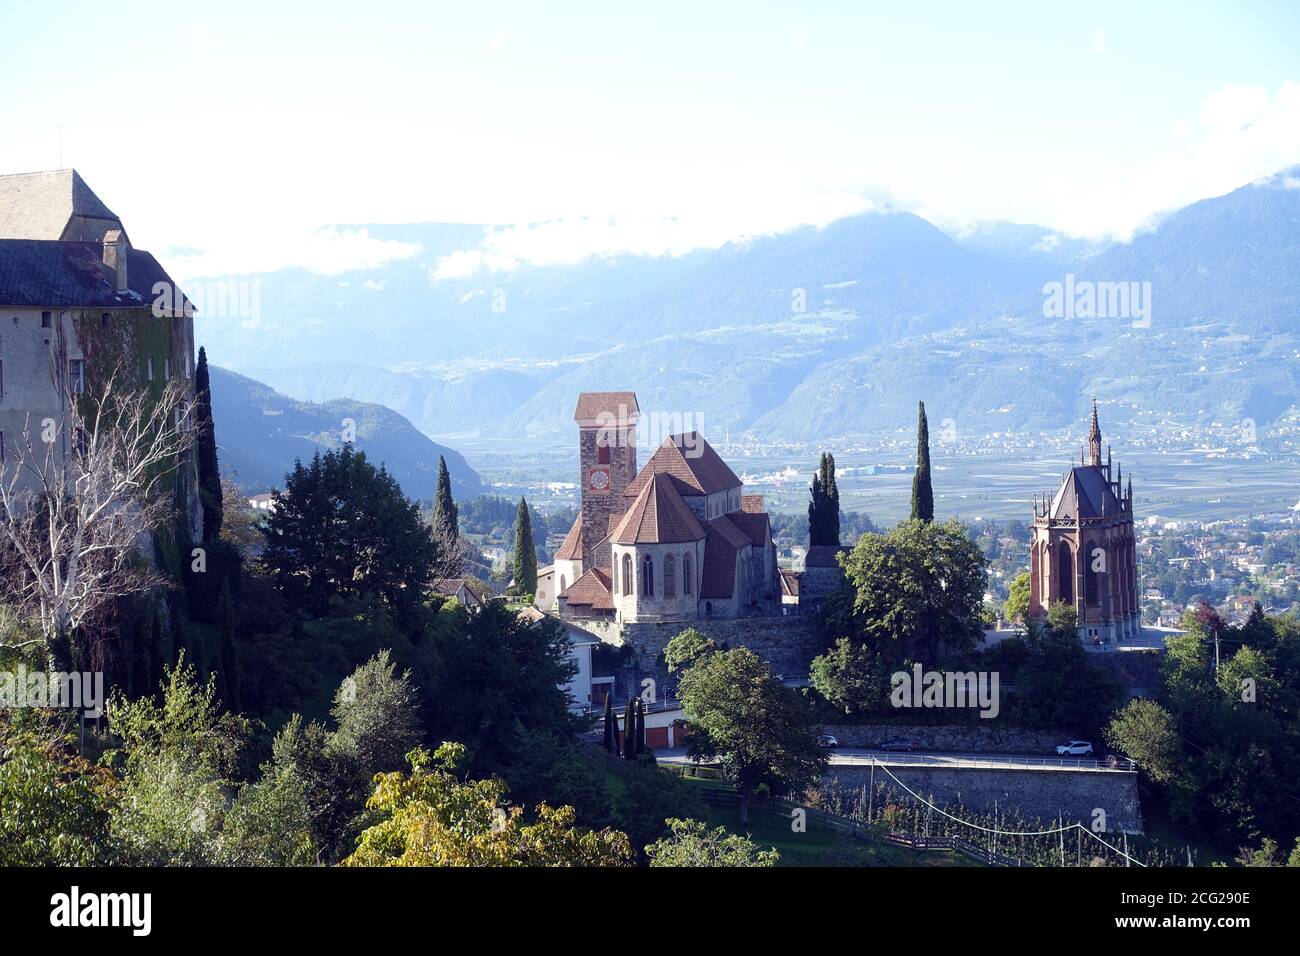 Blick auf Schenna mit Burg, Mausoleum von Erzherzog Johann von Österreich und neuer Pfarrkirche St. Maria Himmelfahrt, Südtirol, Italien Stock Photo